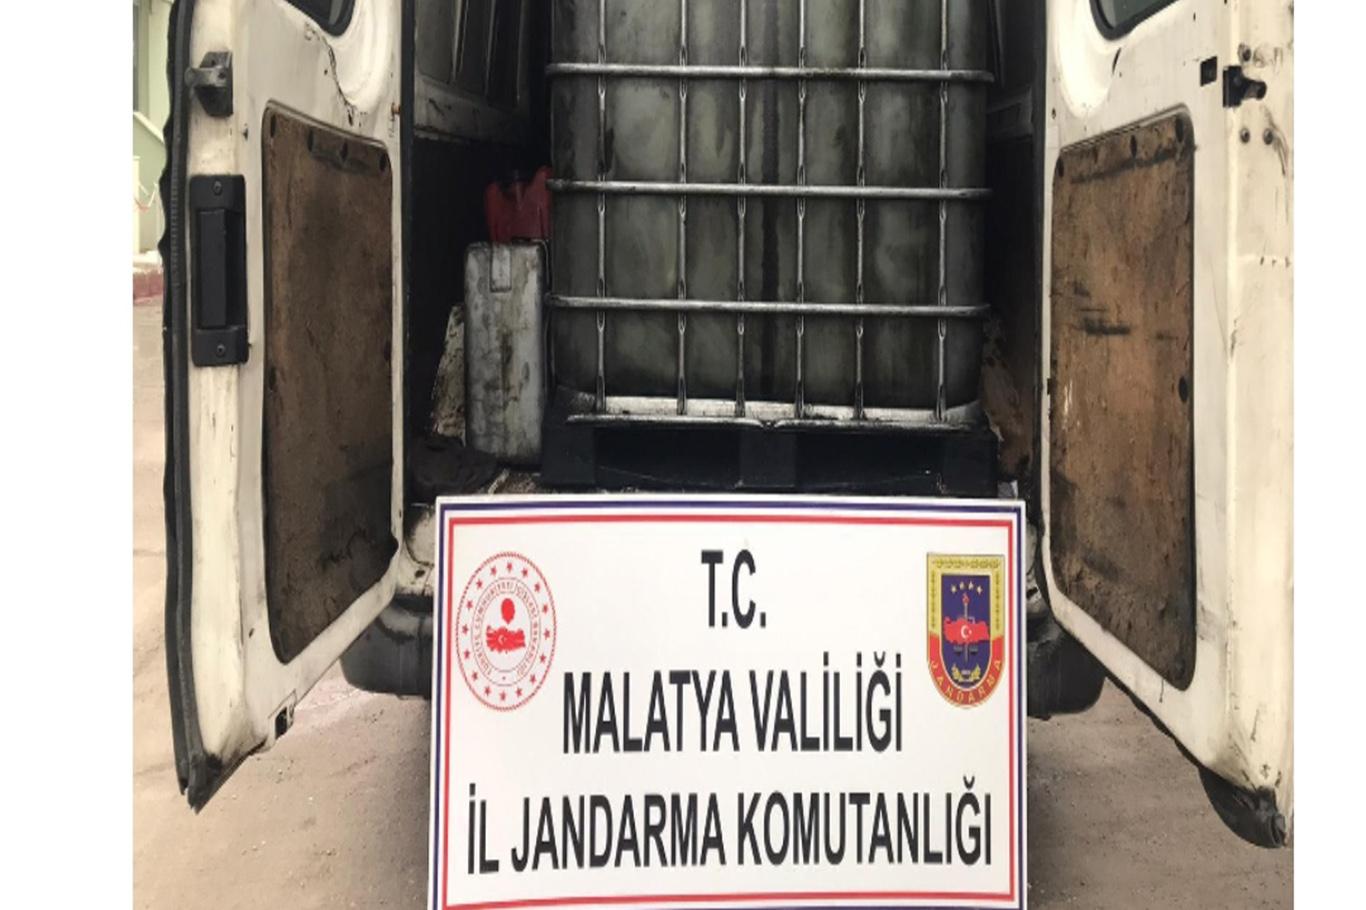 Malatya’da 2 bin 500 litre atık madeni yağ ele geçirildi